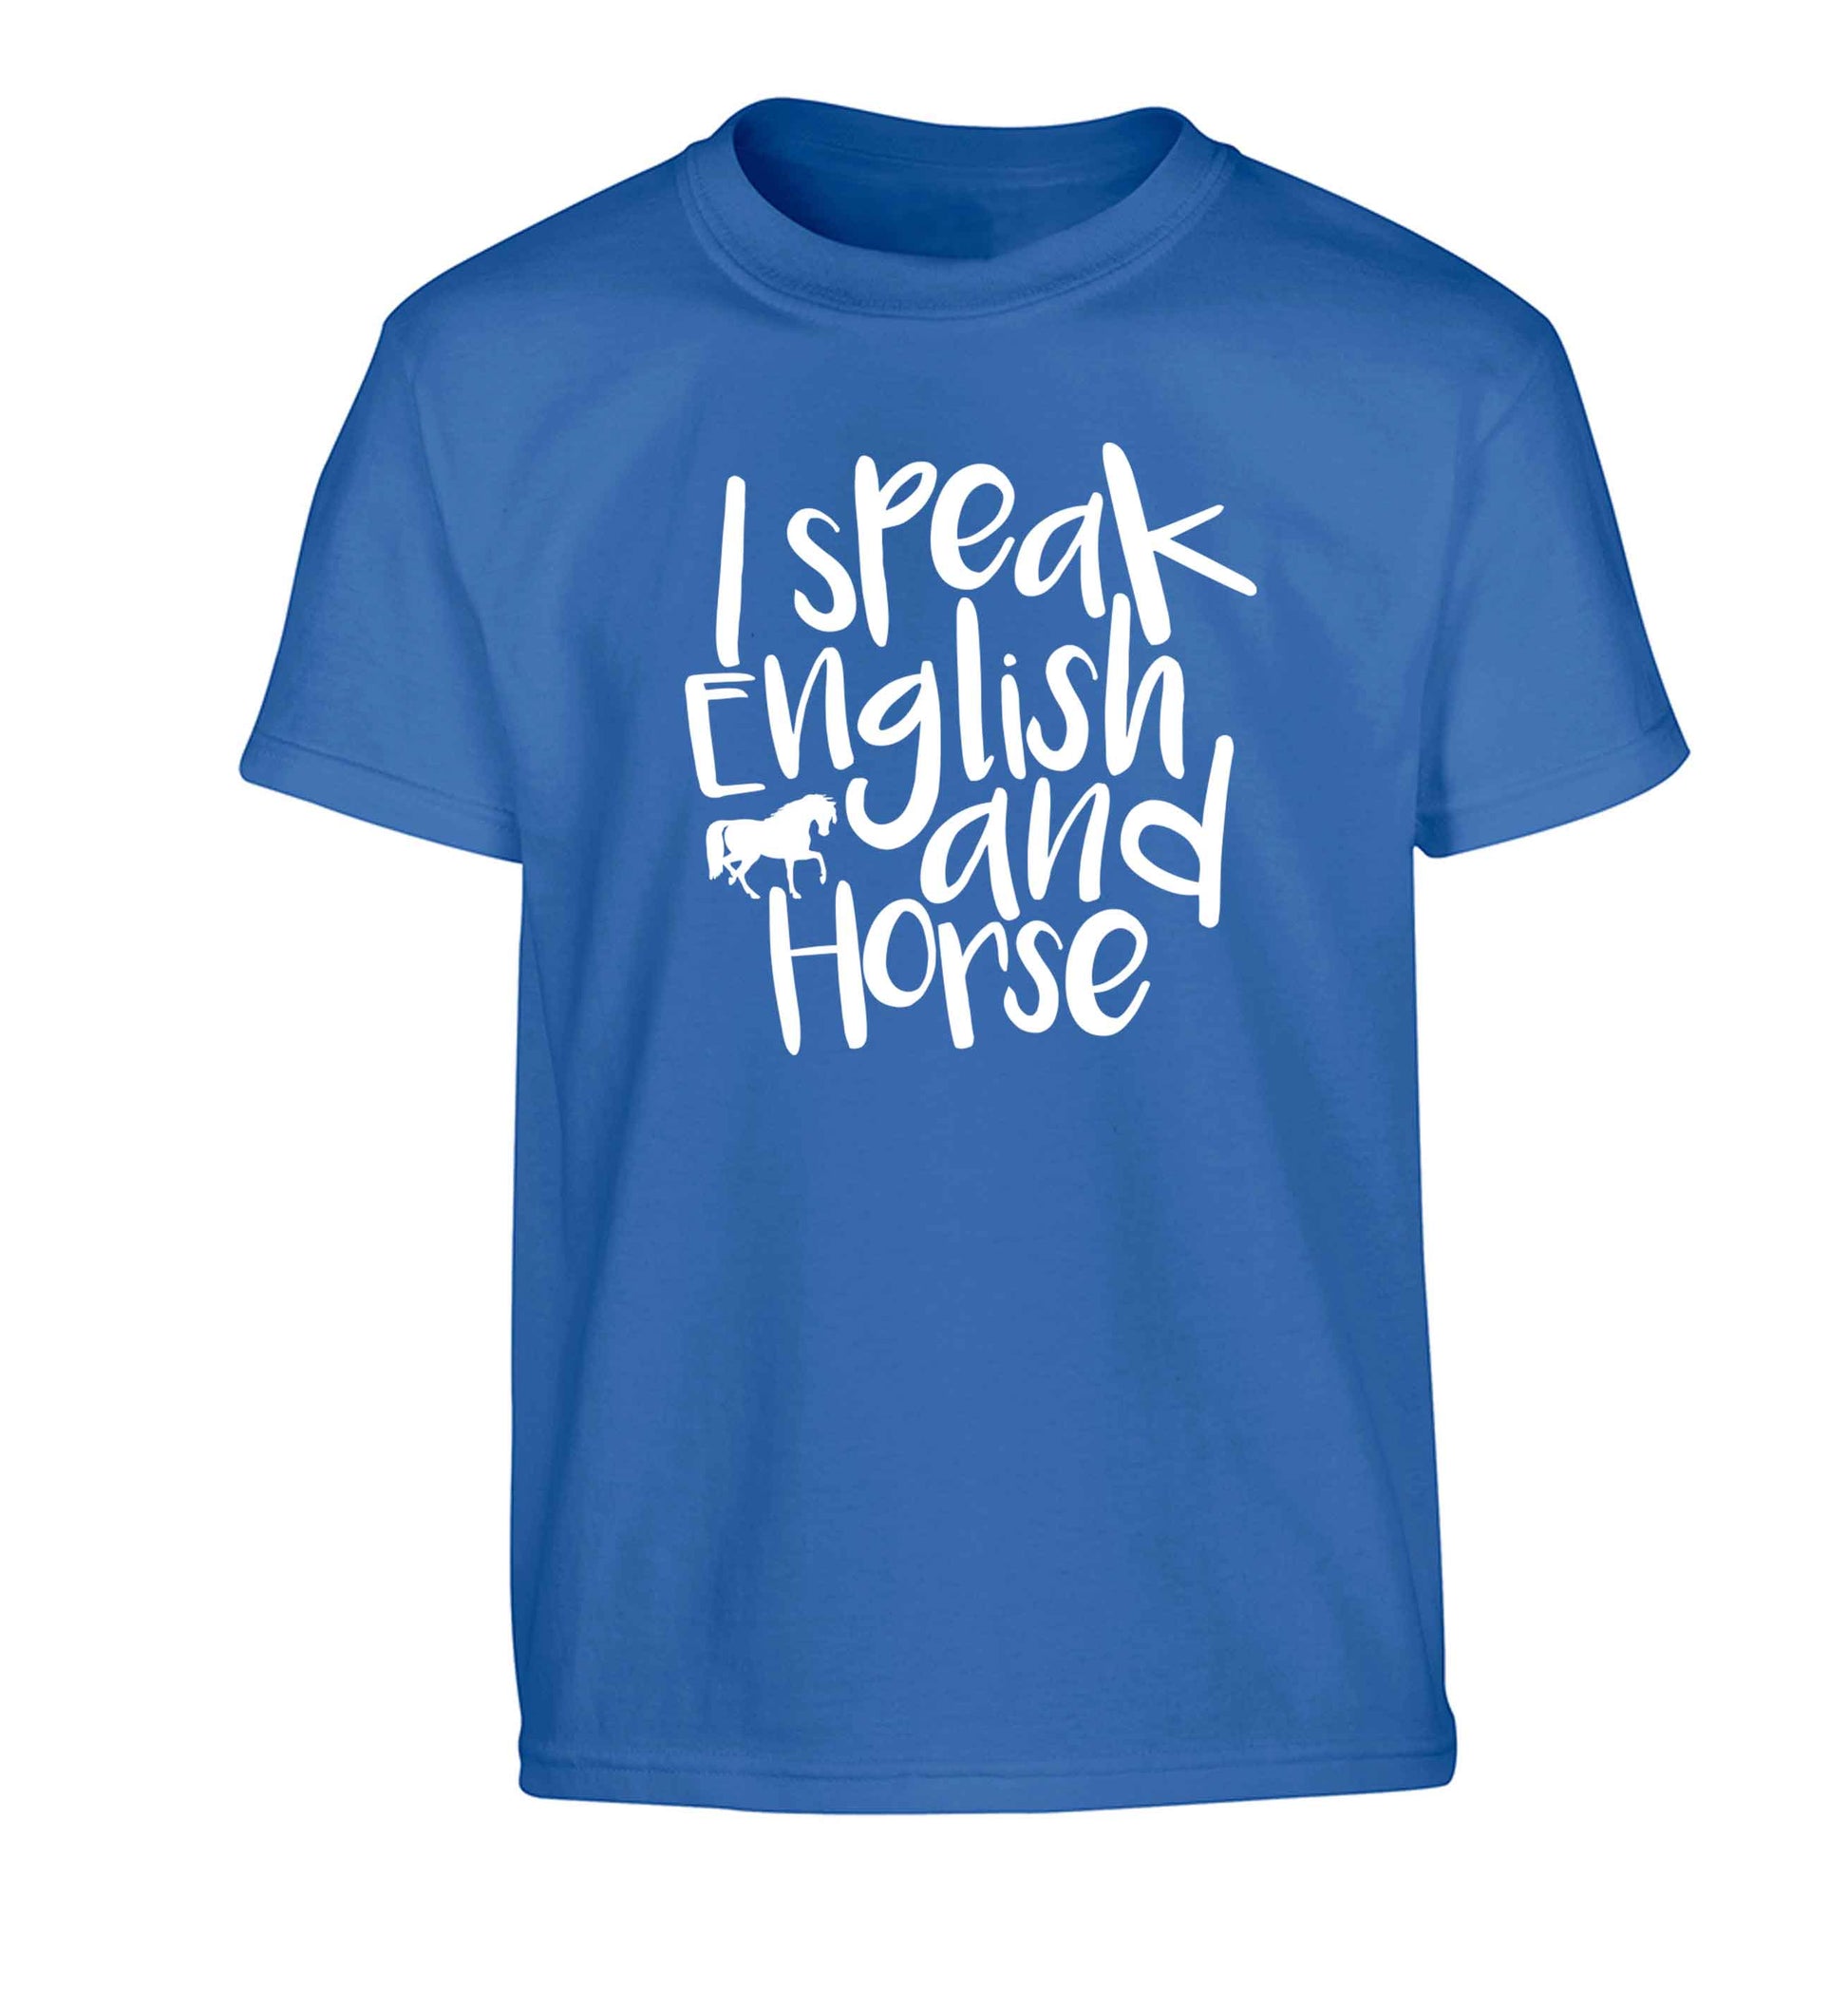 I speak English and horse Children's blue Tshirt 12-13 Years